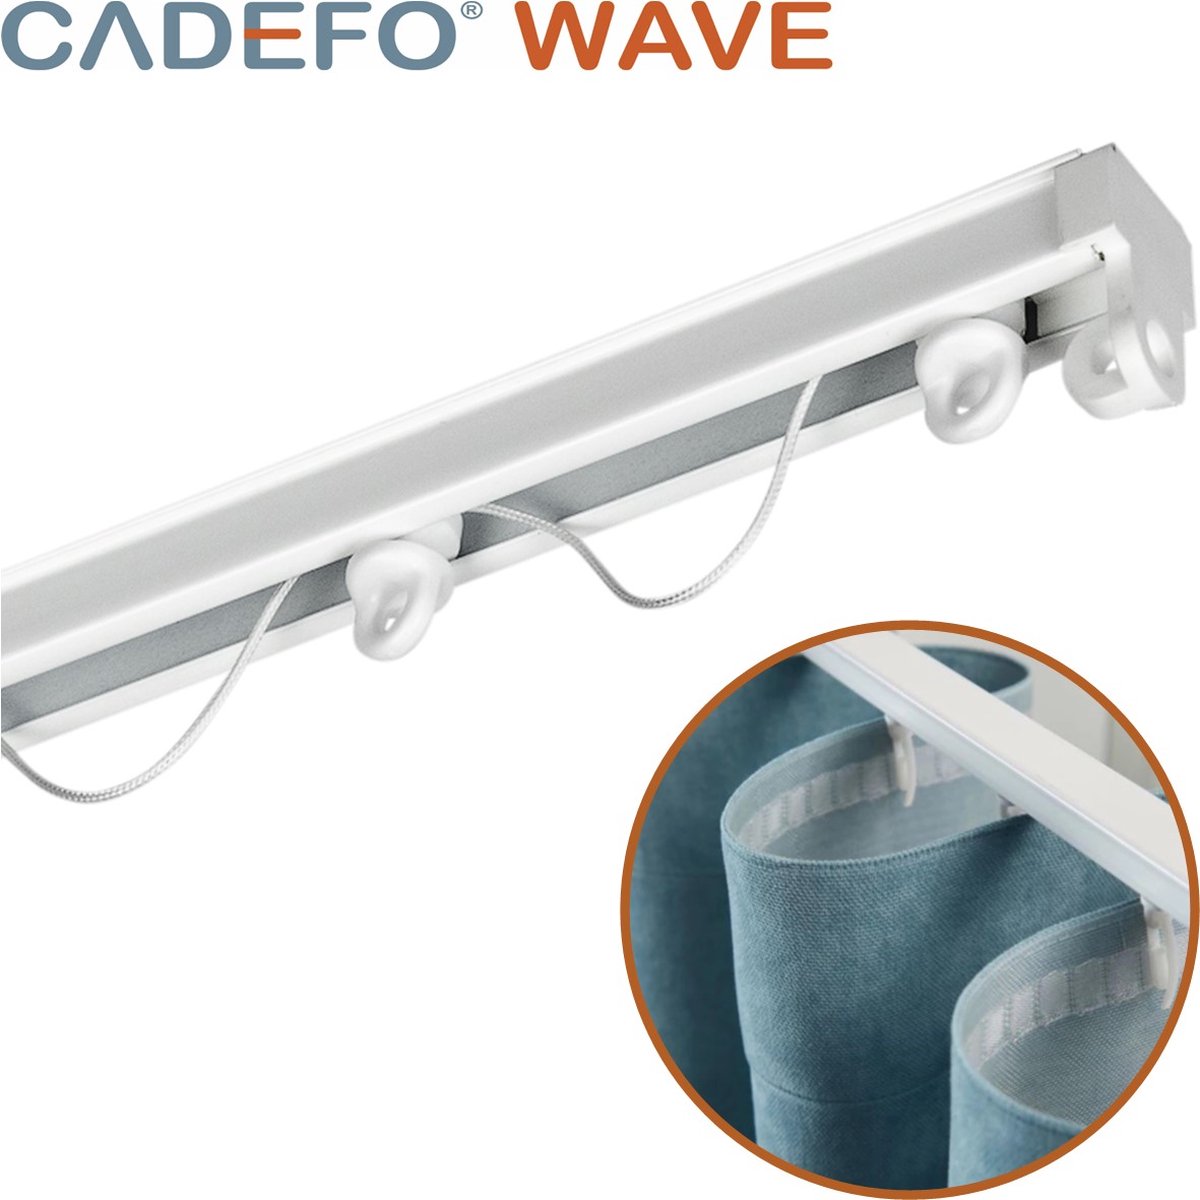 CADEFO WAVE (501 - 550 cm) Gordijnrails - Compleet op maat! - UIT 1 STUK - Leverbaar tot 6 meter - Plafondbevestiging - Lengte 528 cm